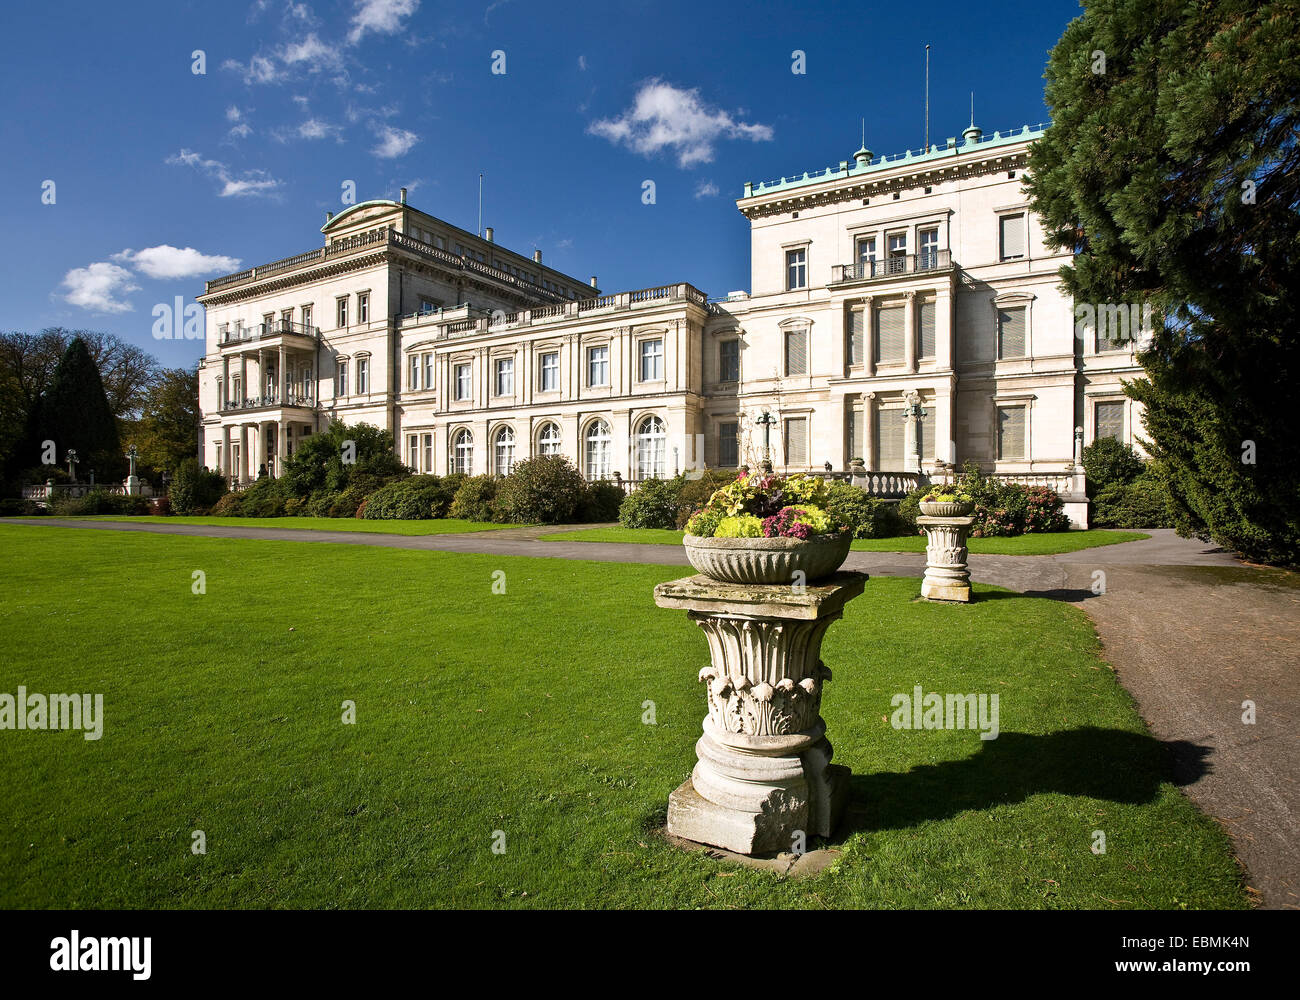 Villa Hügel mansion, Essen, Ruhr district, North Rhine-Westphalia, Germany Stock Photo